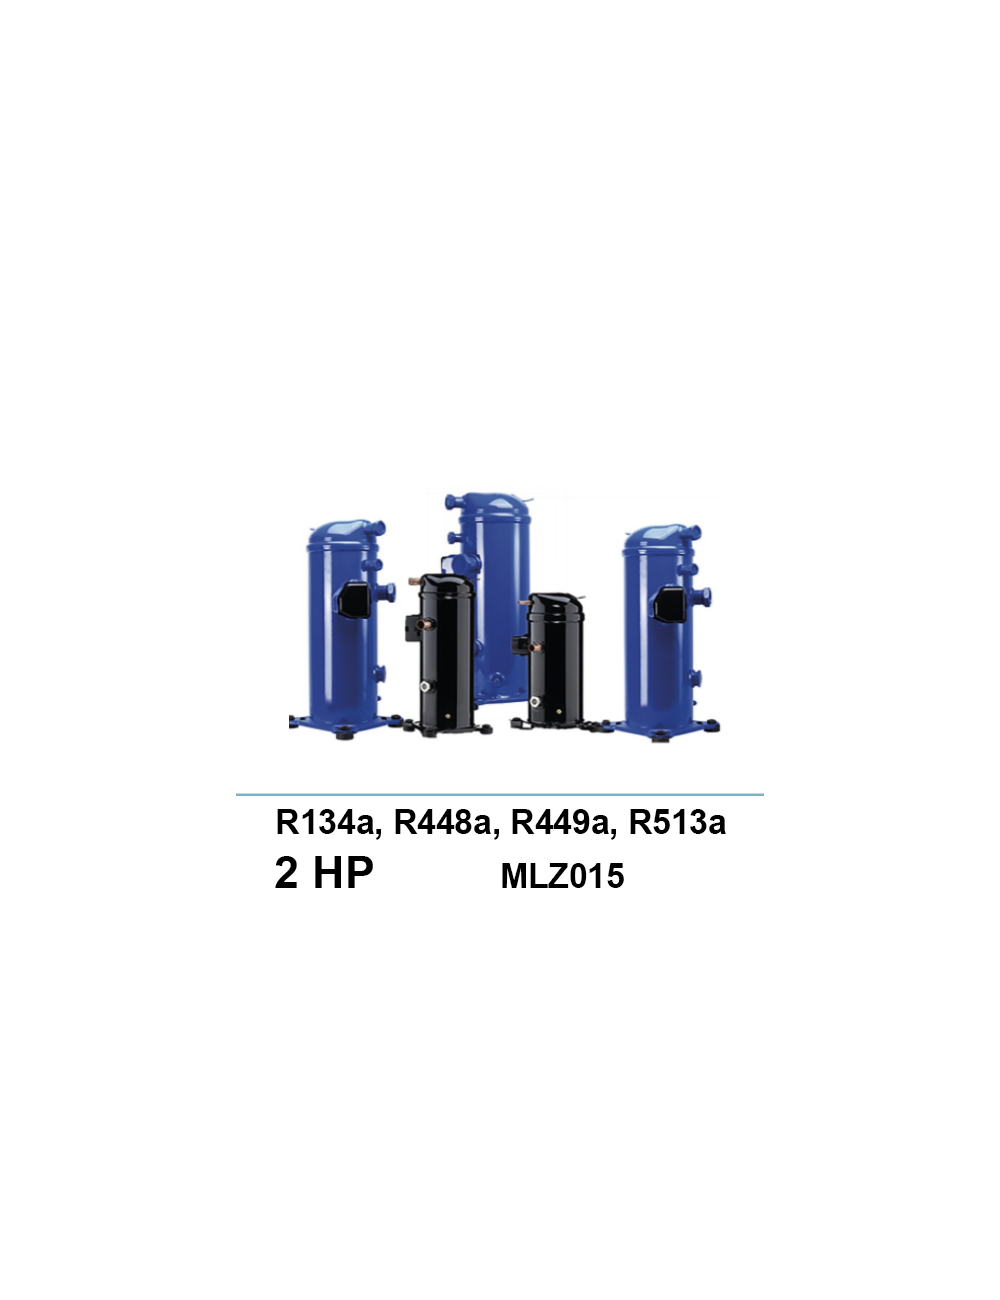 Compresseur Danfoss Scroll MLZ015 R134a//R448a/R449a/R513a 2Ch